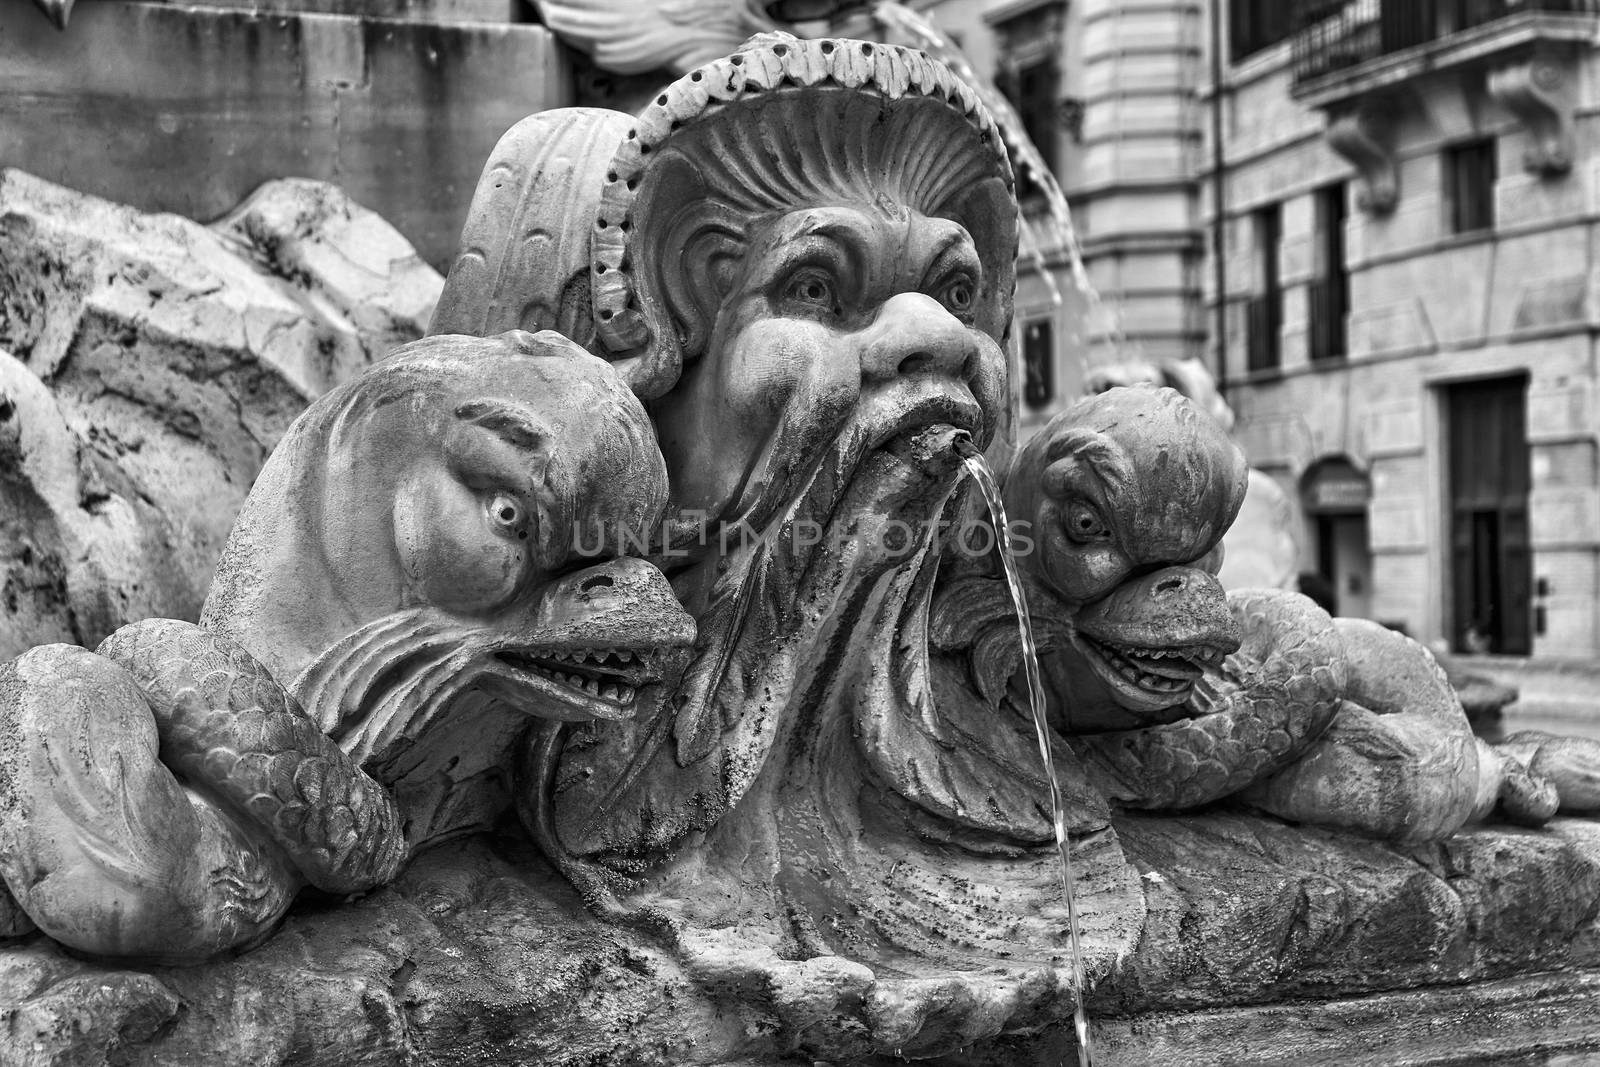 detail of the fountain in Piazza della Rotonda in Rome in black and white